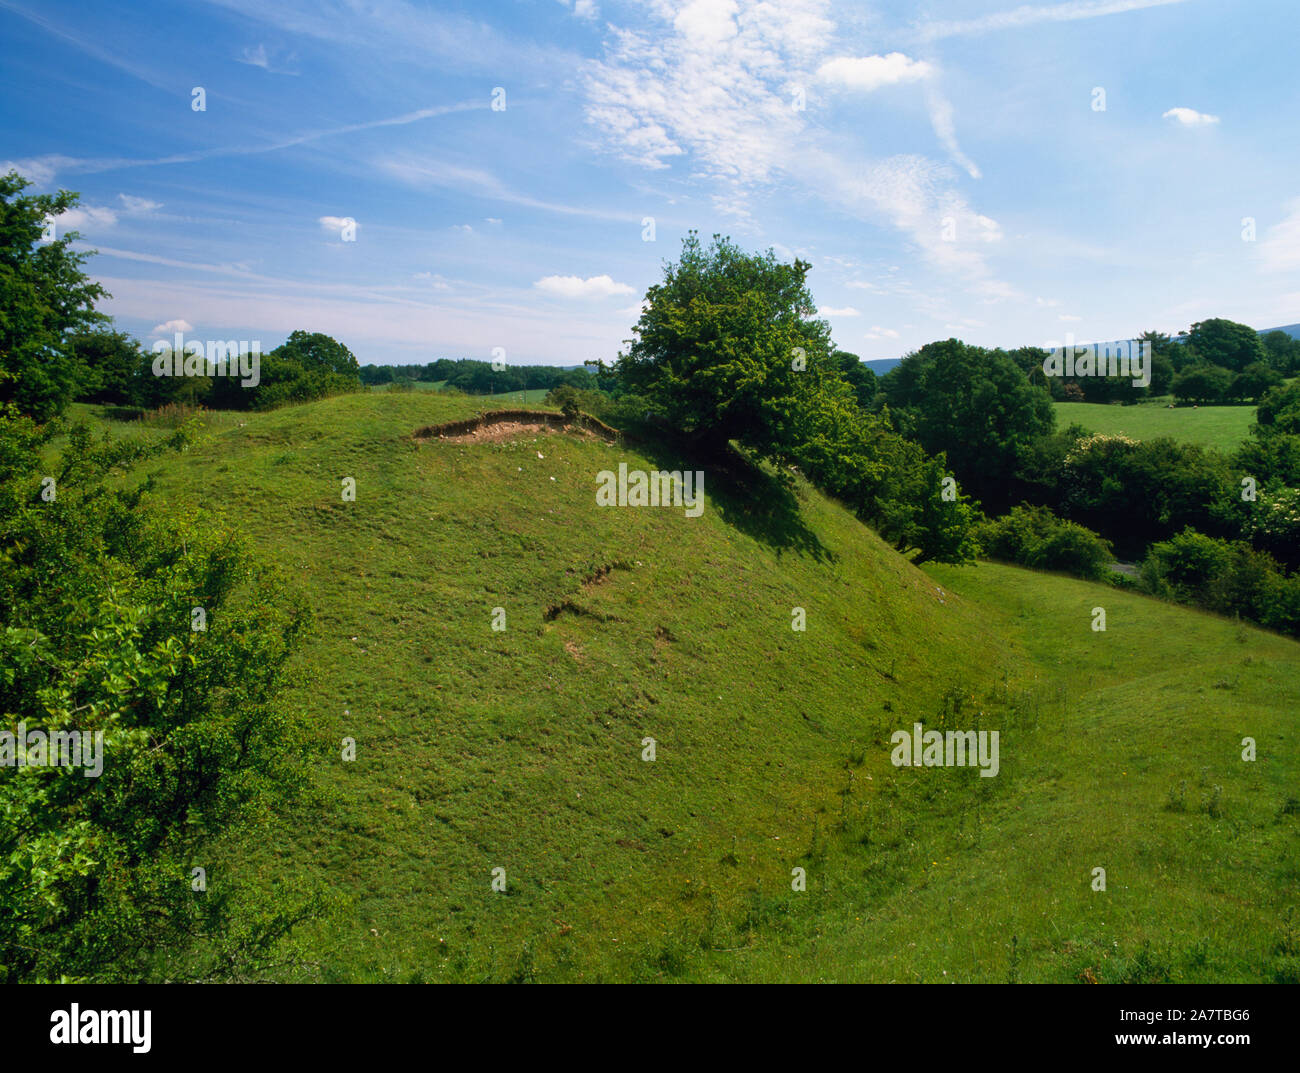 Visualizzare ENE di Tomen y Rhodwydd motte e bailey castello, Denbighshire, Wales, Regno Unito, mostrando il bastione, fossato & banca esterna (counterscarp) della Bailey. Foto Stock